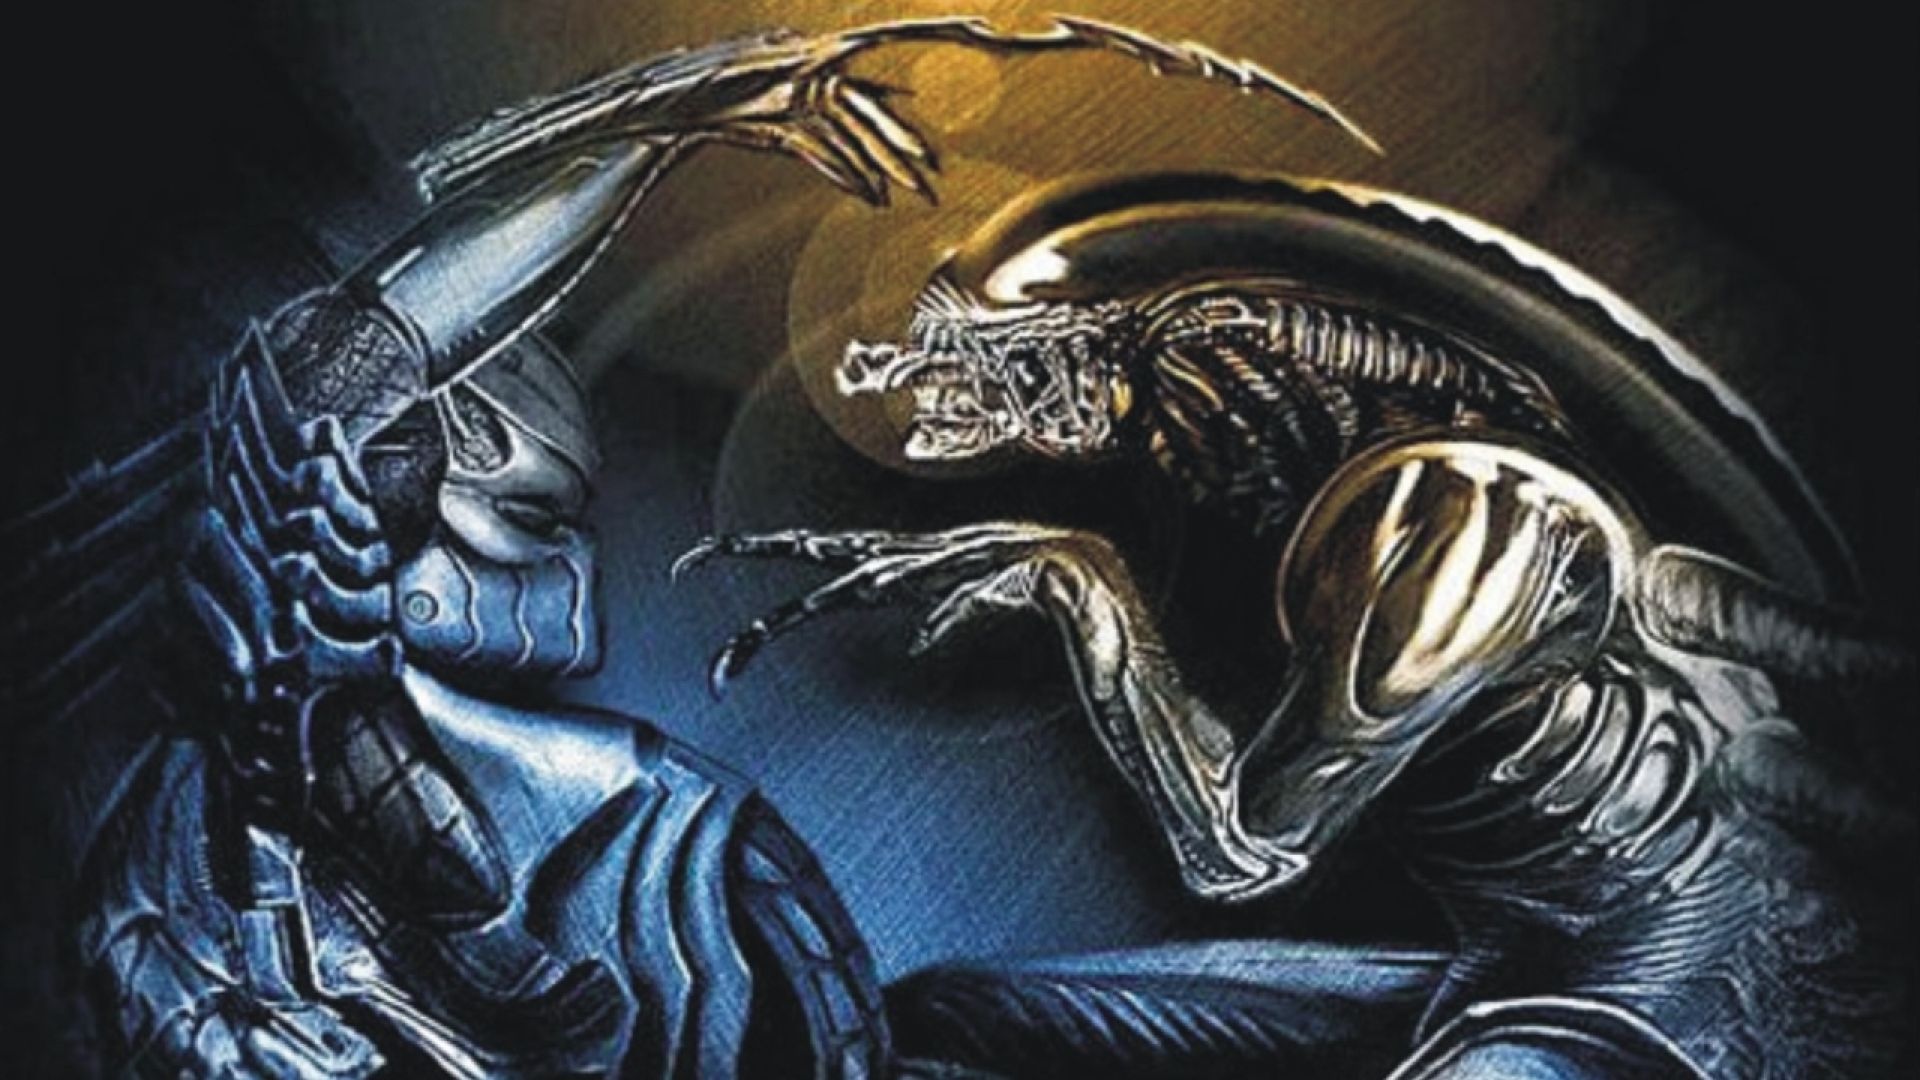 download movie alien vs predator